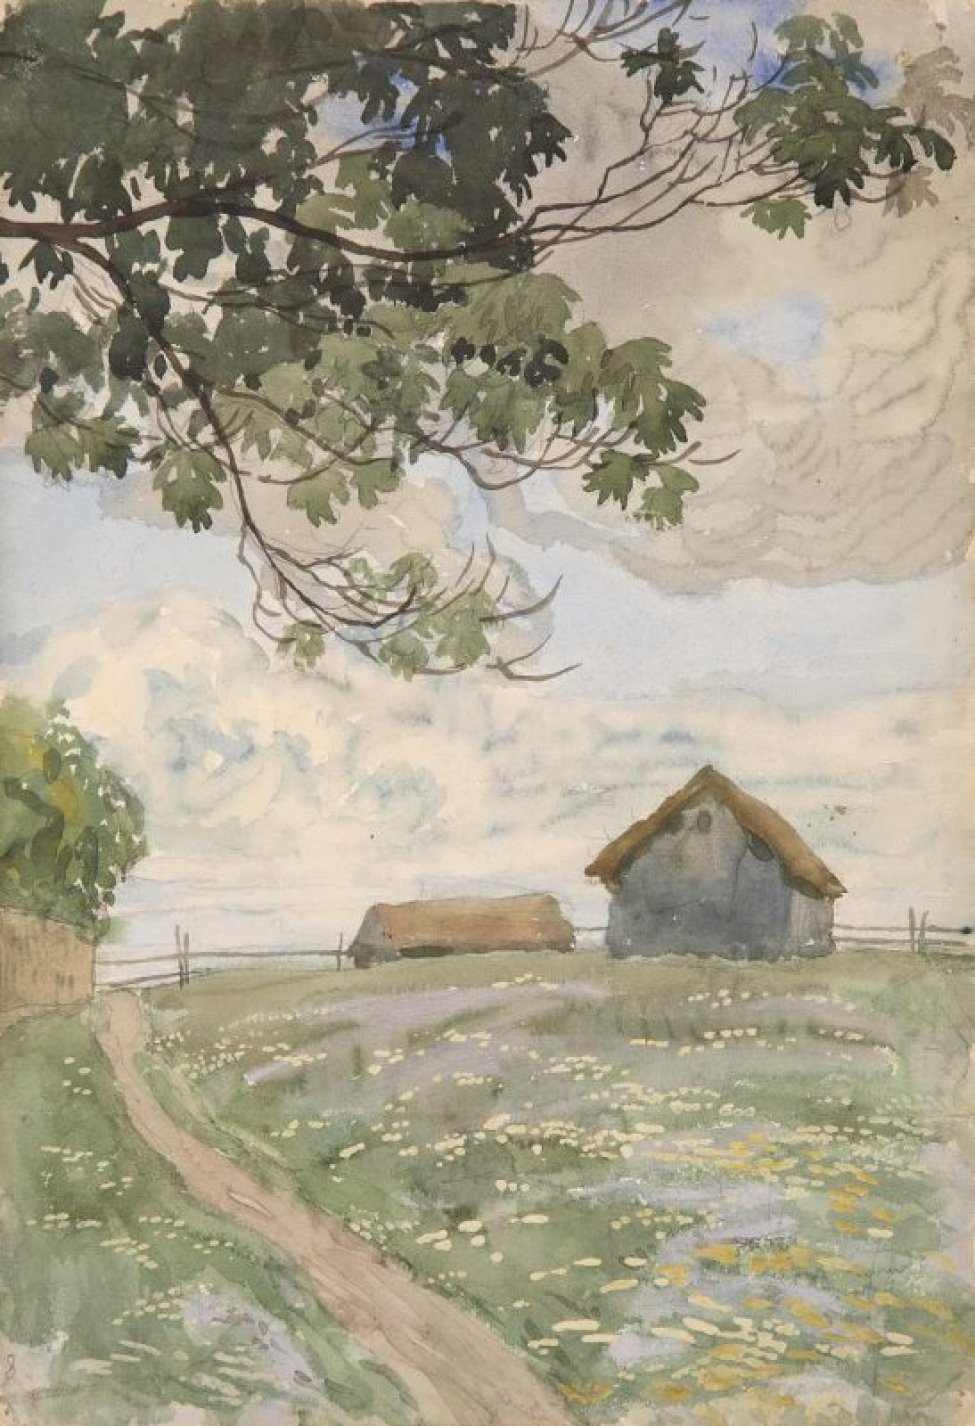 Изображен летний деревенский пейзаж с двумя сараями на втором плане. В левой части изображена дорога; в верхней - ветки дерева с зелеными листьями